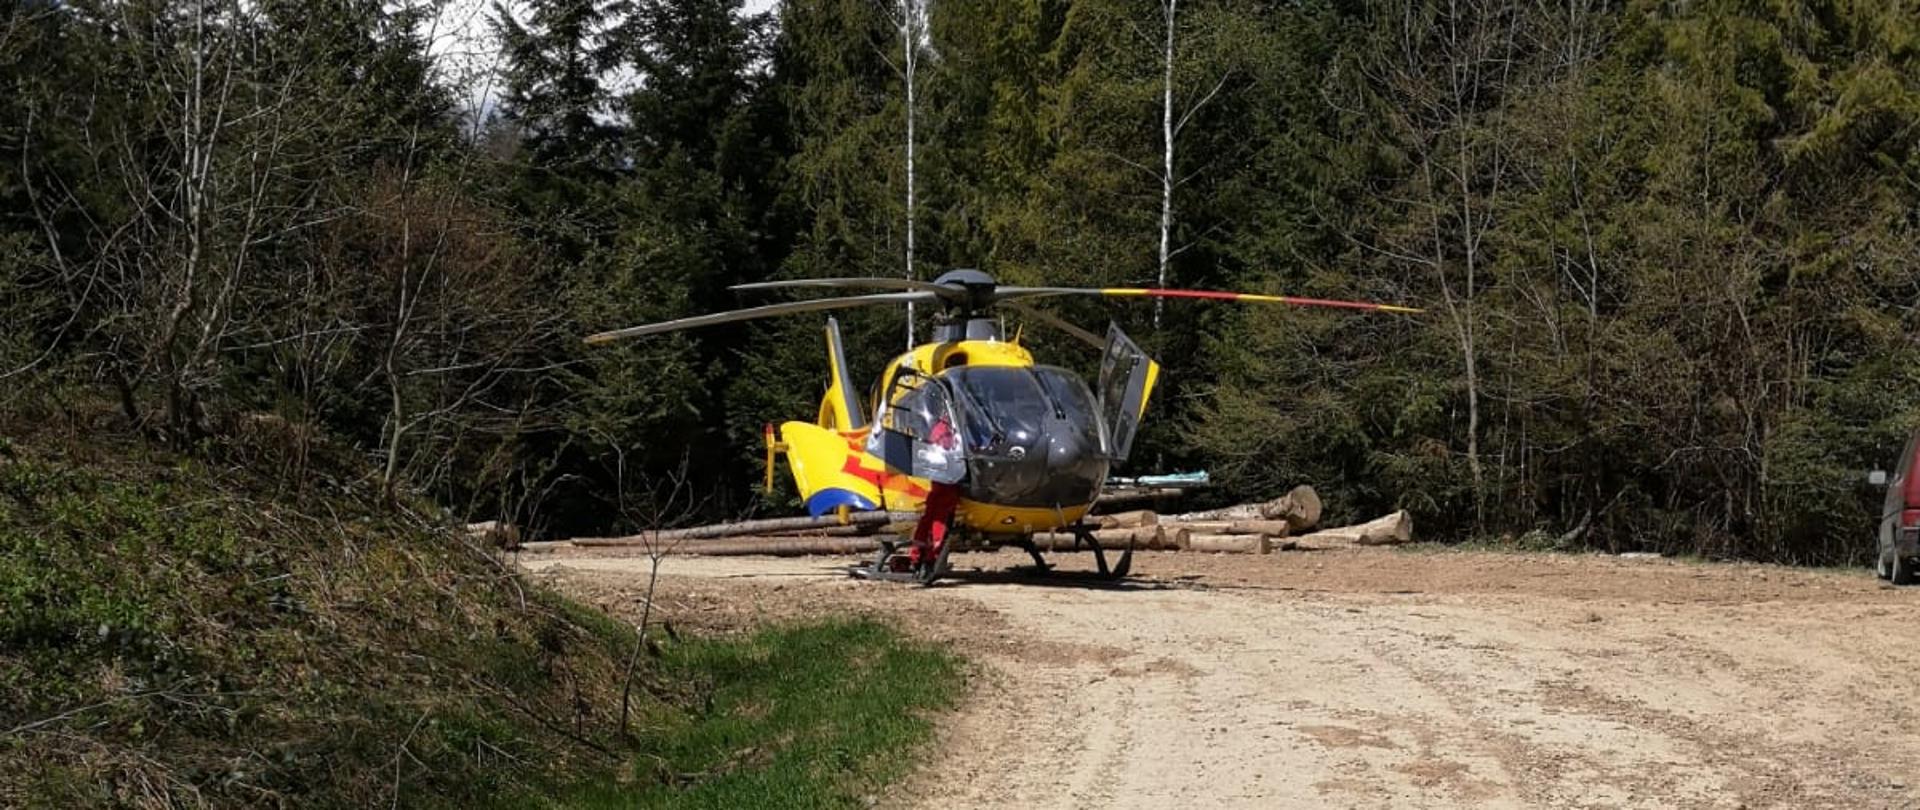 Na zdjęciu widać śmigłowiec Lotniczego Pogotowia Ratunkowego który przygotowuje się do startu na drodze szutrowej. W około las.